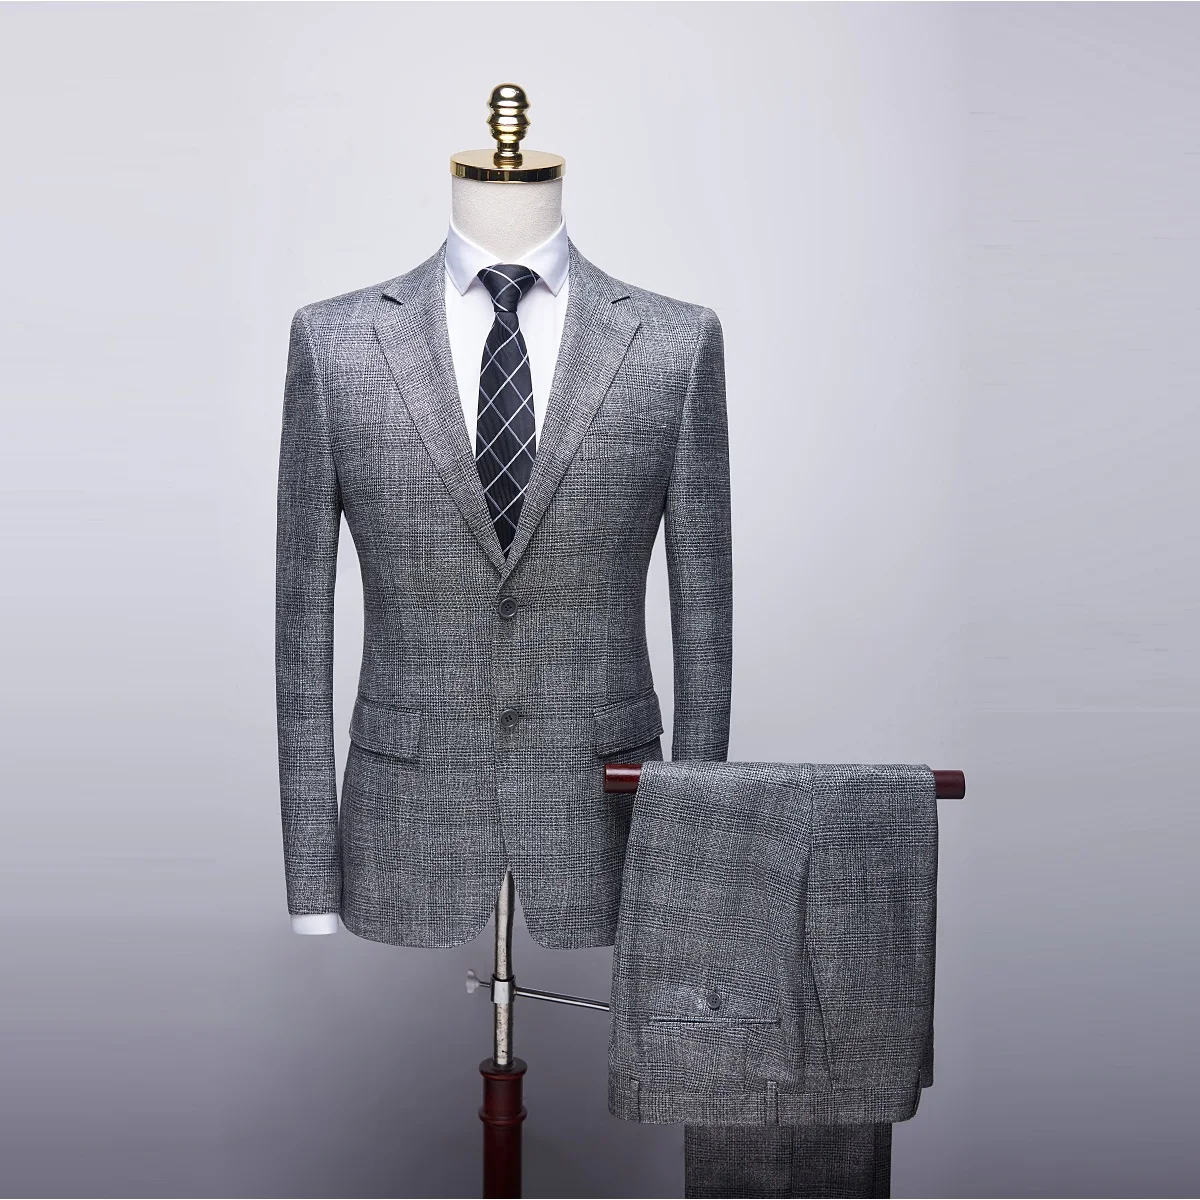 Men's Boutique Suit Slim Fit Wedding Suits for Men High Quality Wedding Business Formal Suits Elegant Two Piece Set - Цвет: 858